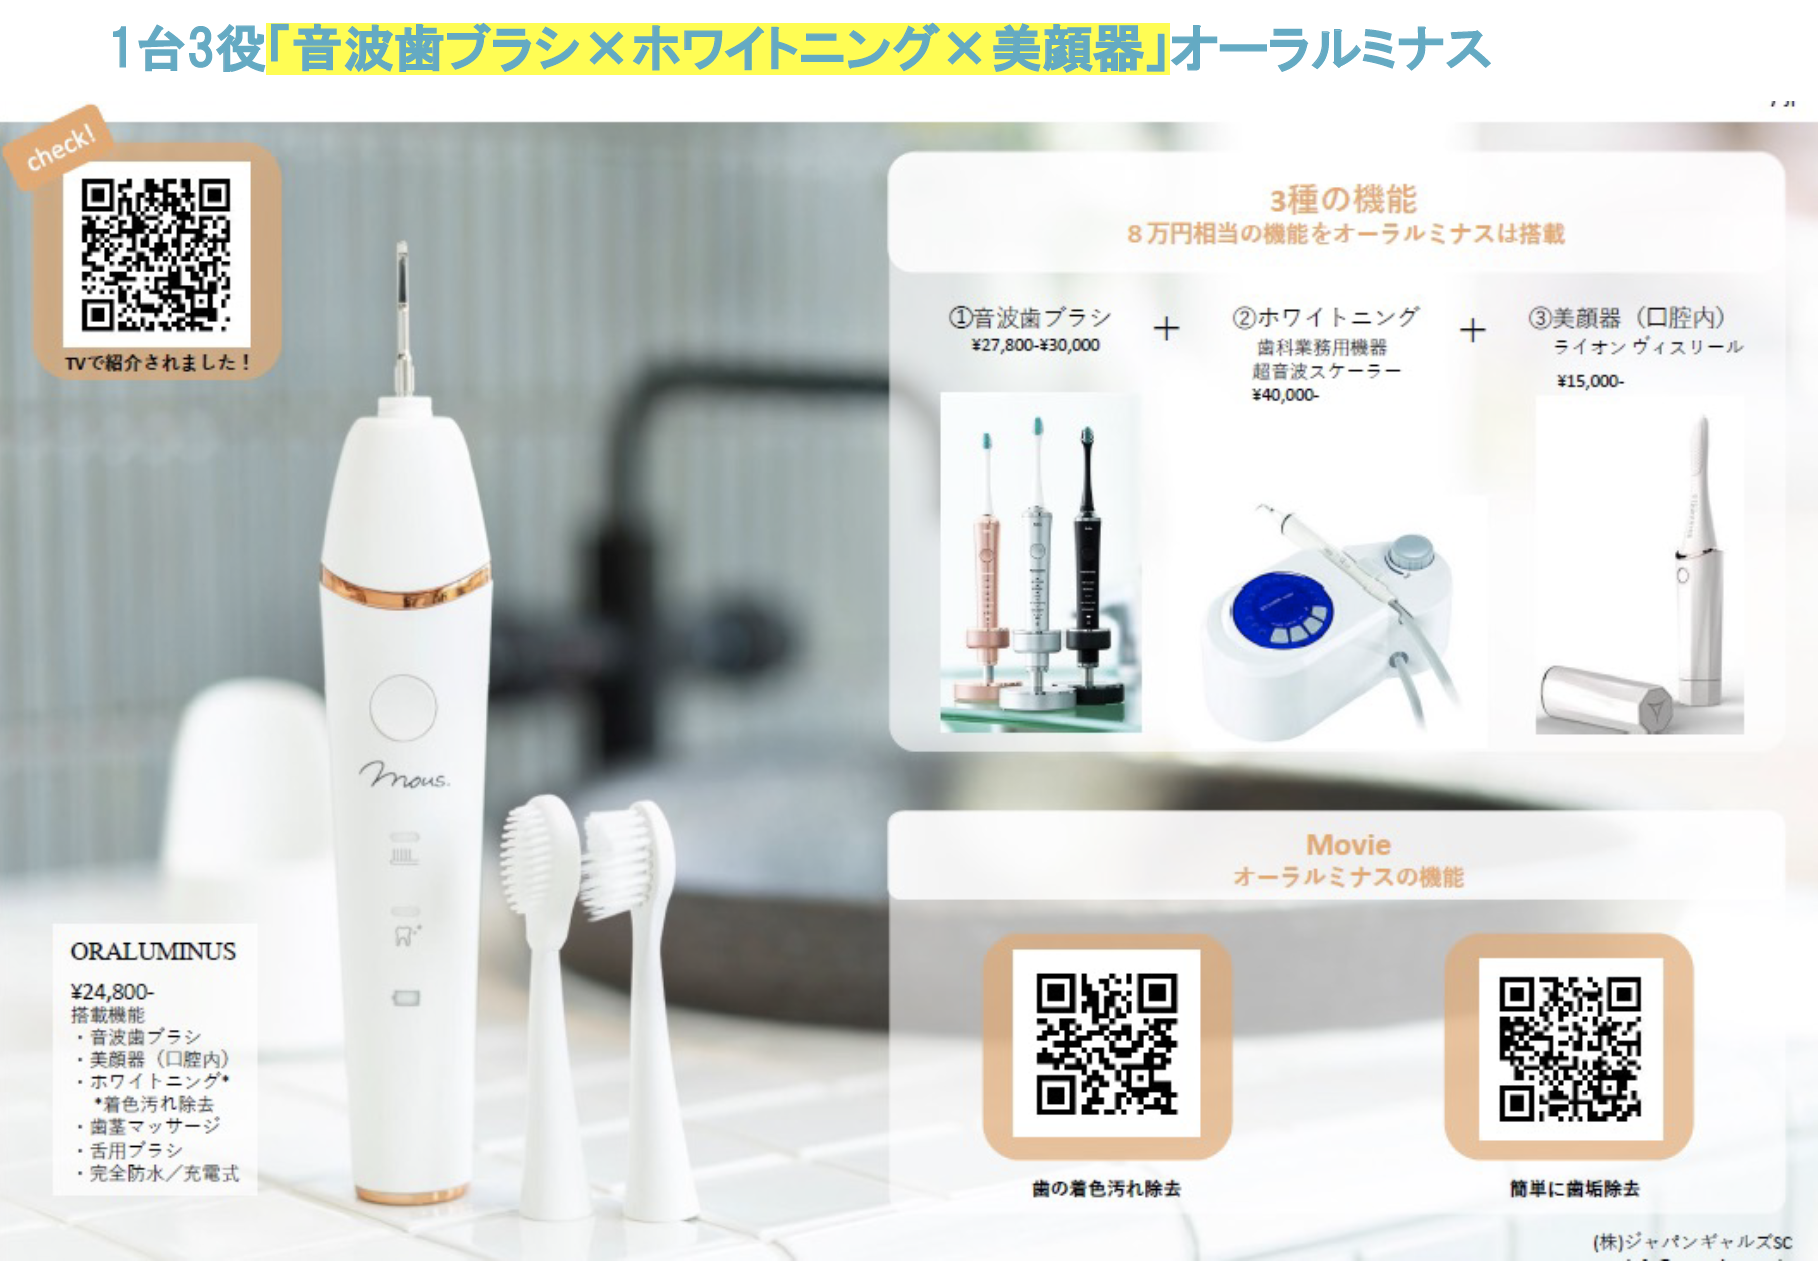 オーラルミナス - 電動歯ブラシ